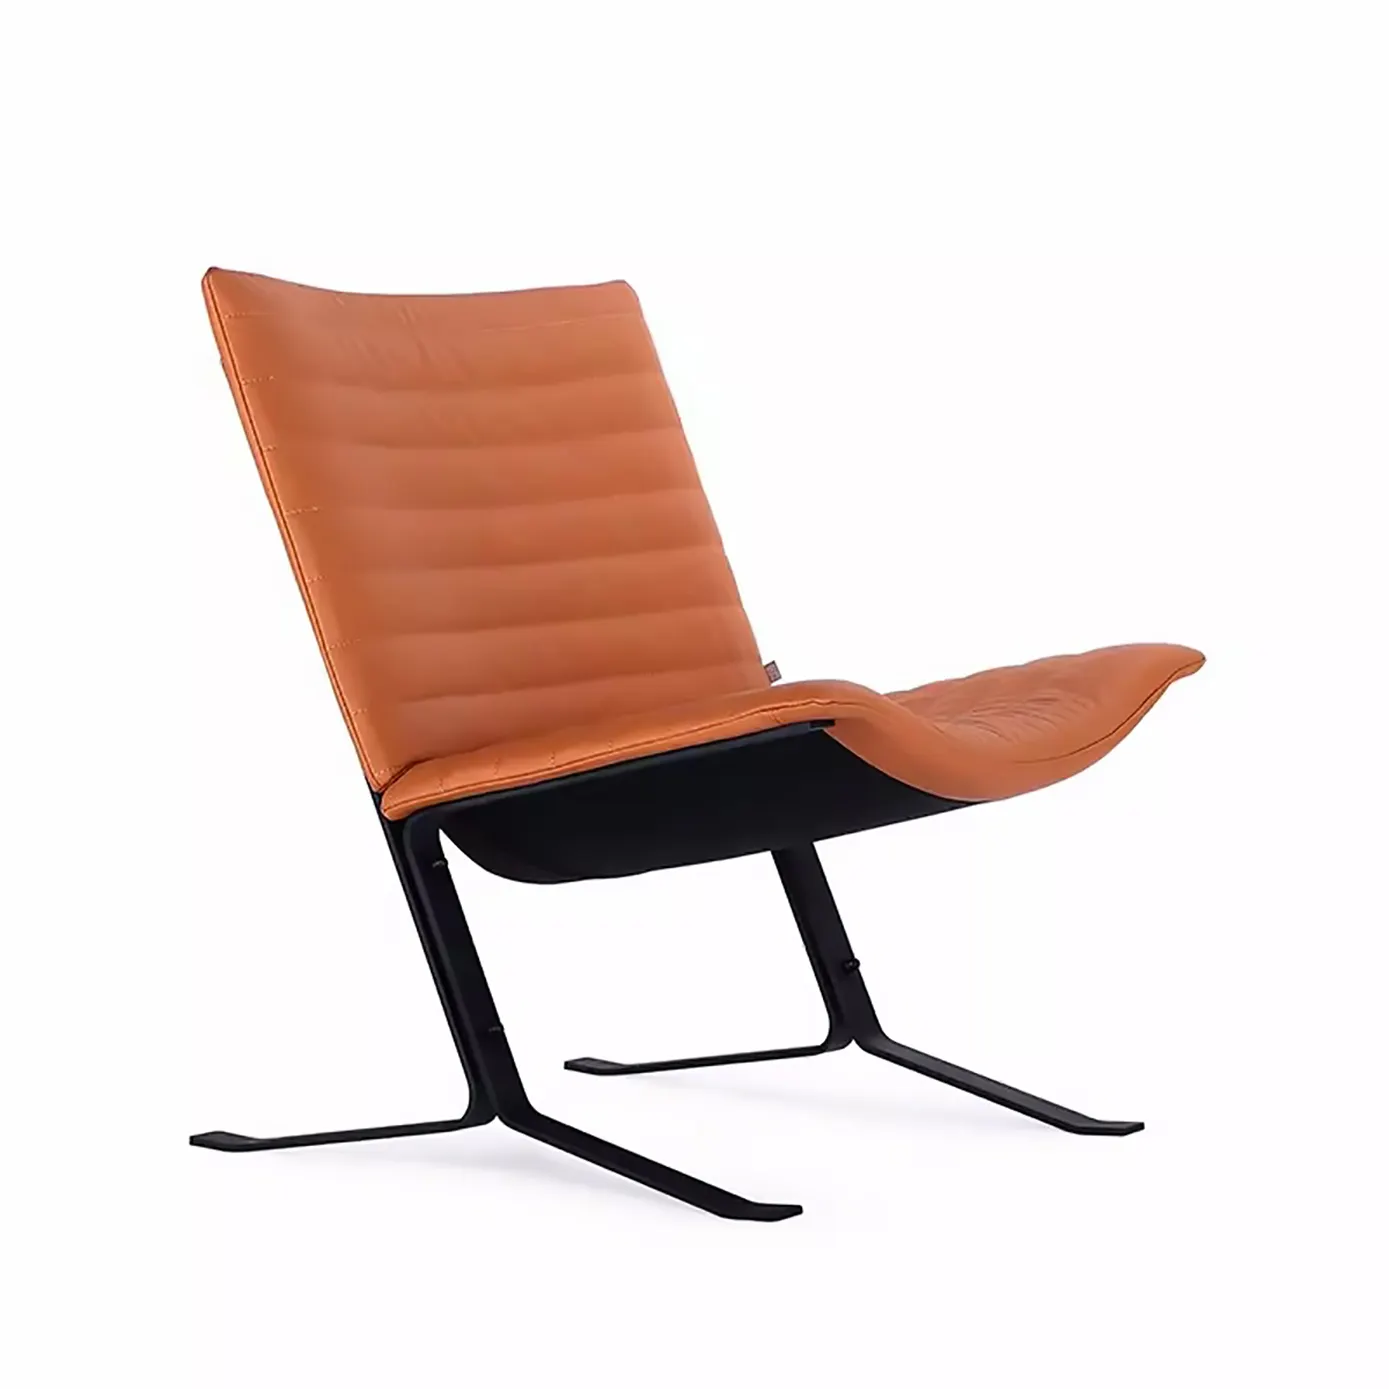 Kursi elang desainer internet selebriti Nordik kursi sederhana dan modis rumah ruang tamu kursi santai negosiasi